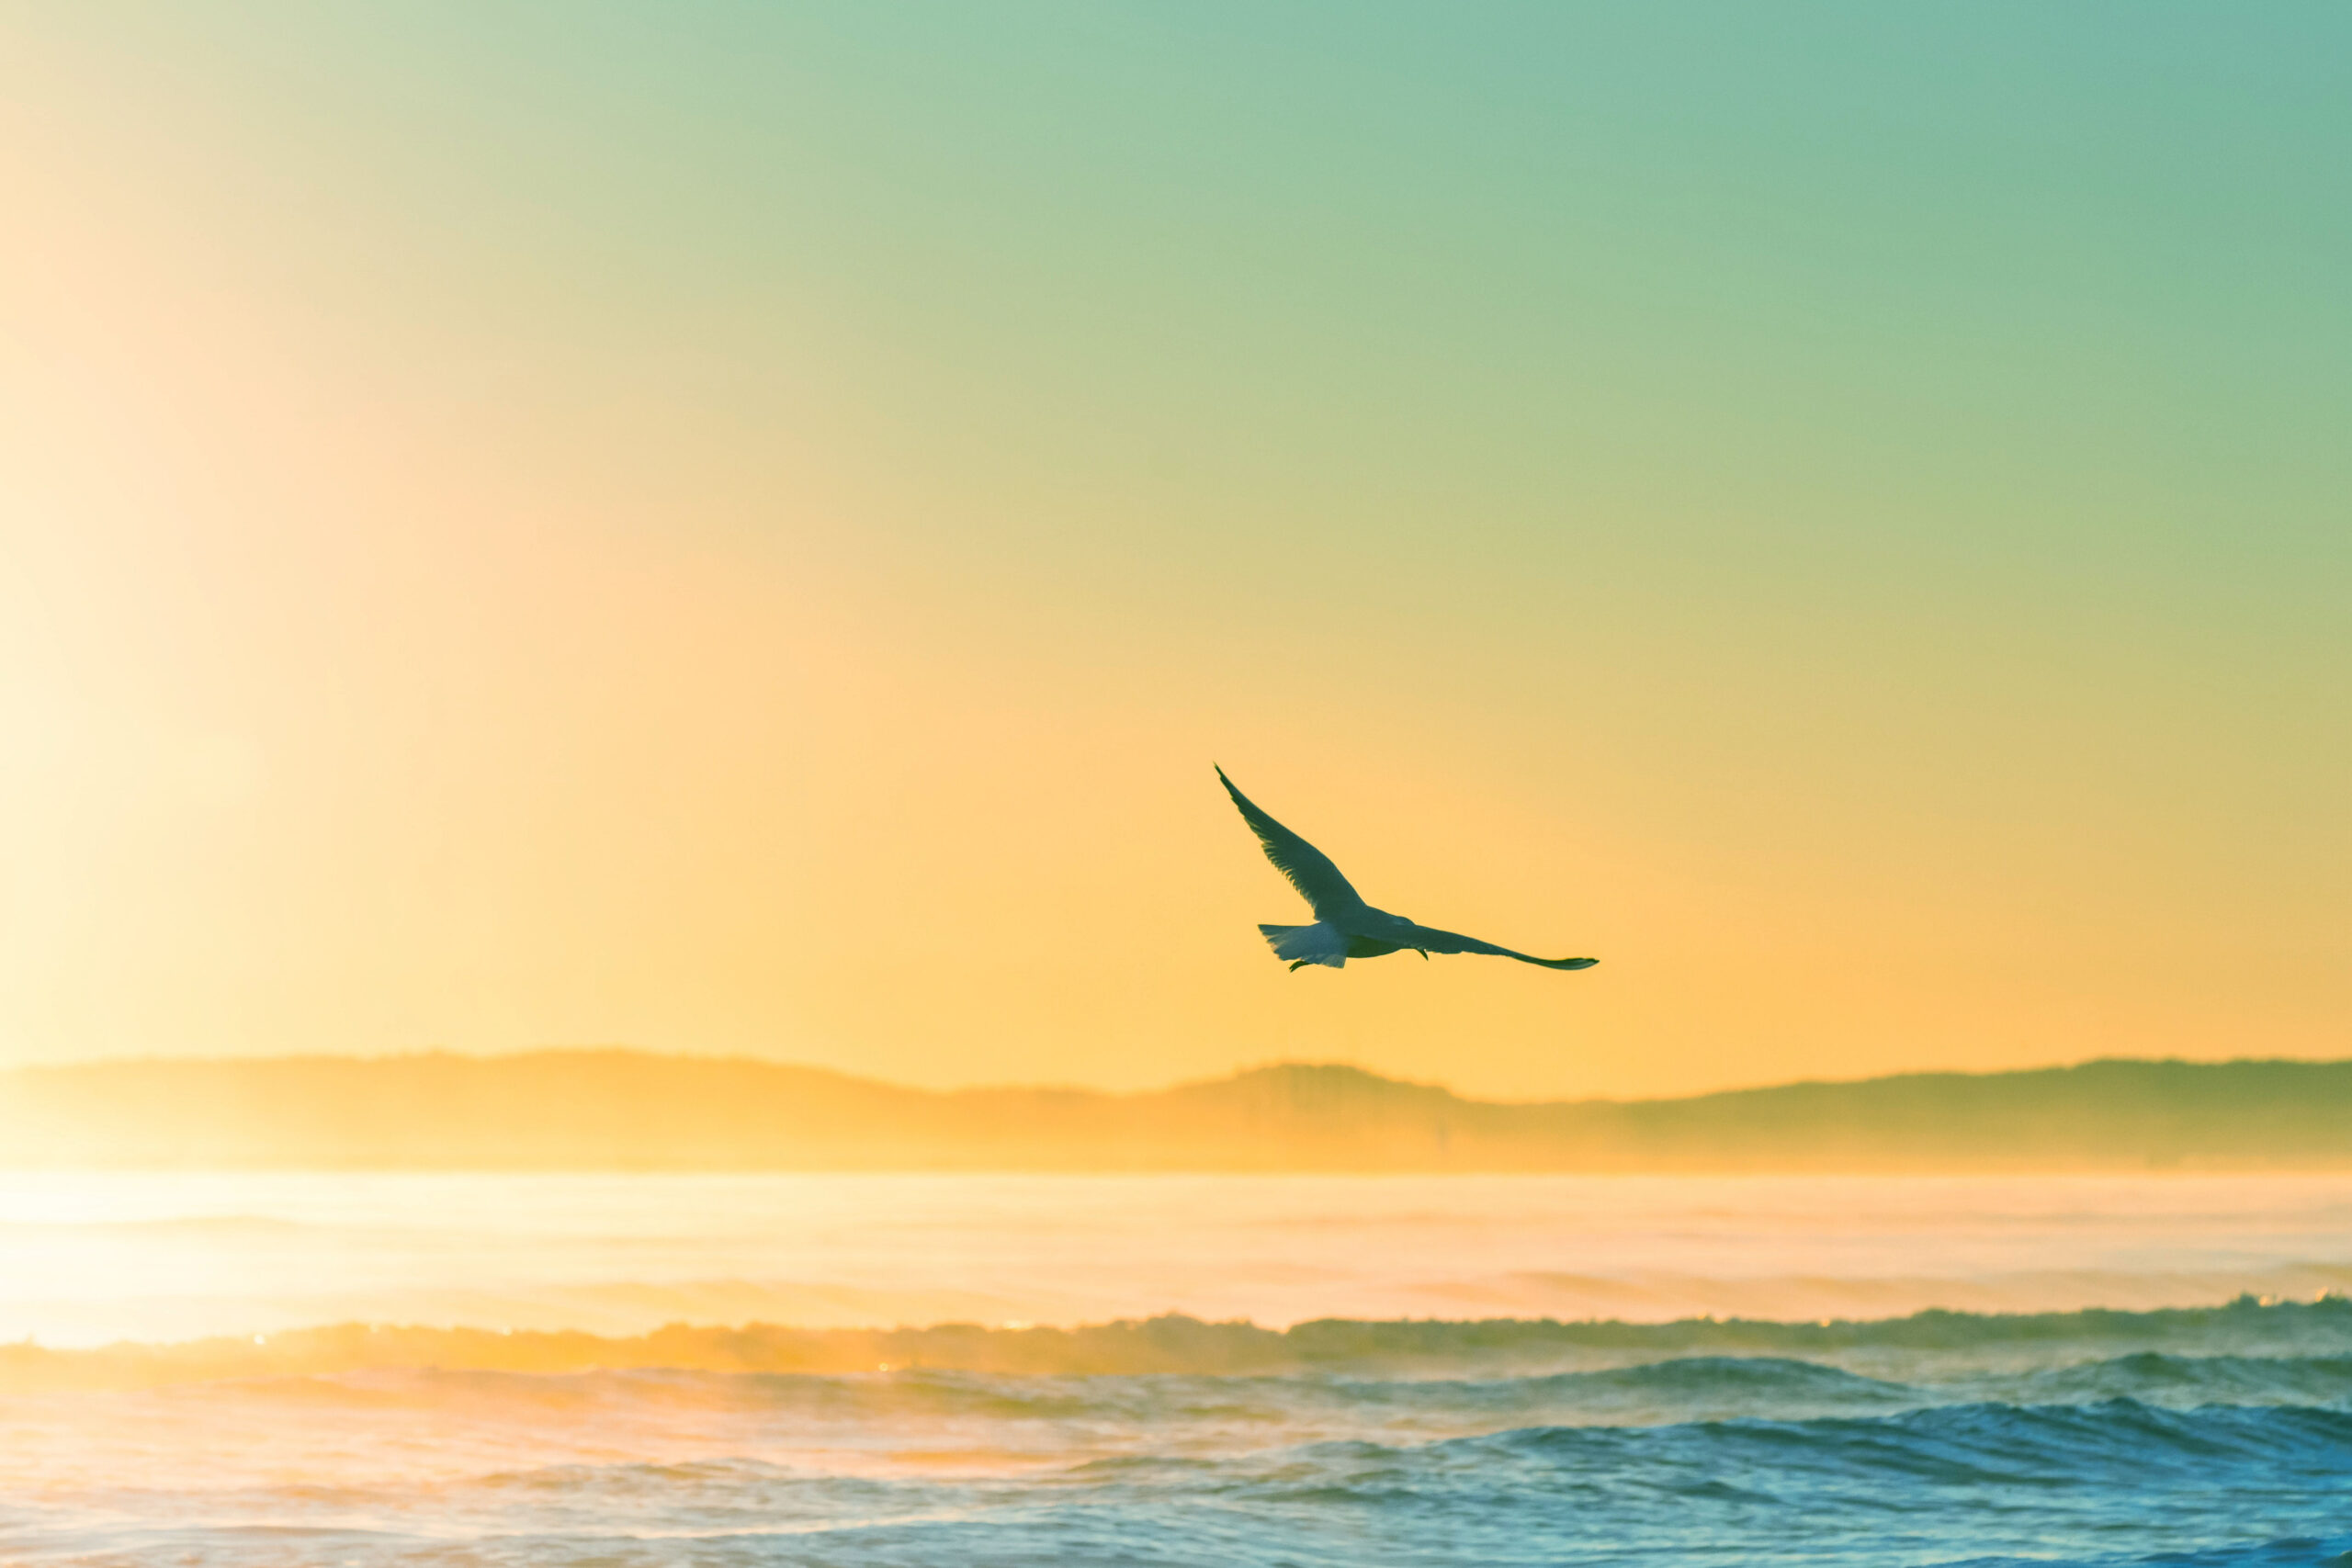 seagull flying over an ocean scene